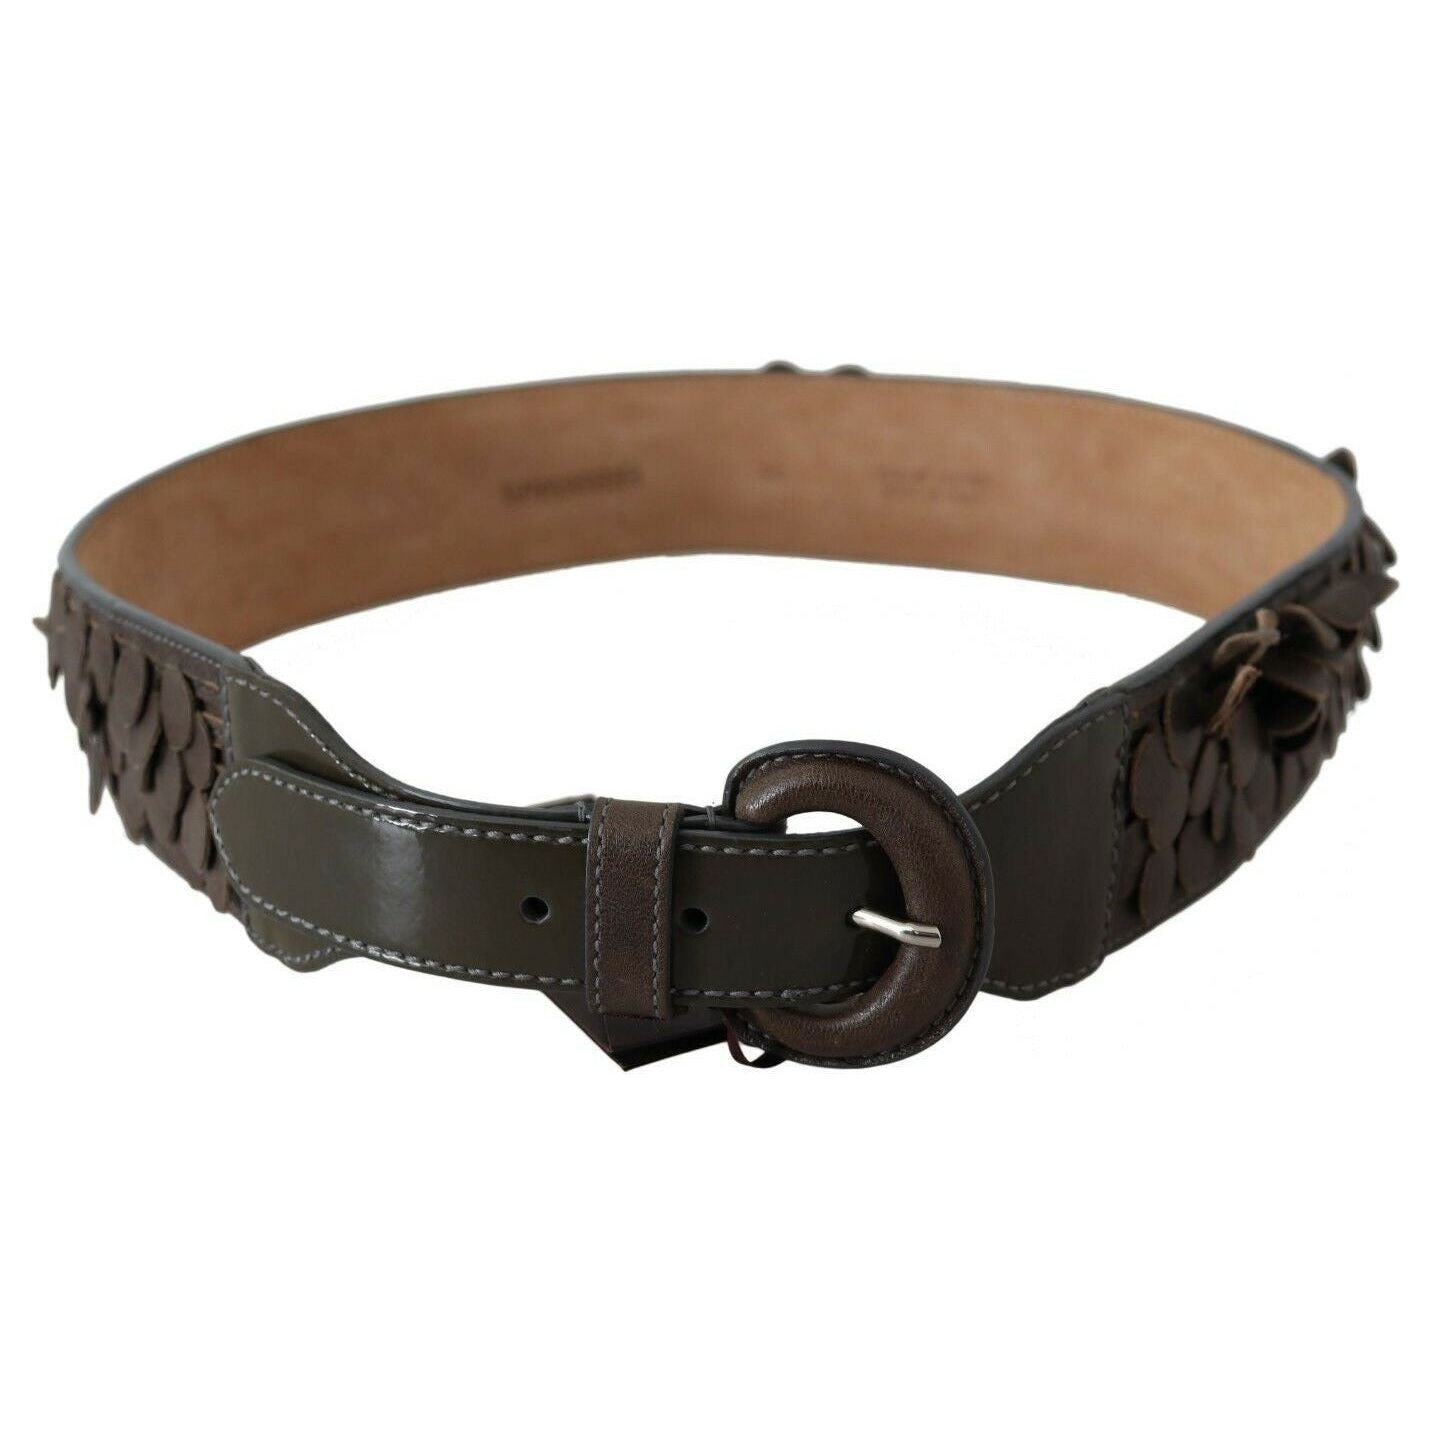 Ermanno Scervino | Dark Brown Leather Round Buckle Waist Belt  | McRichard Designer Brands